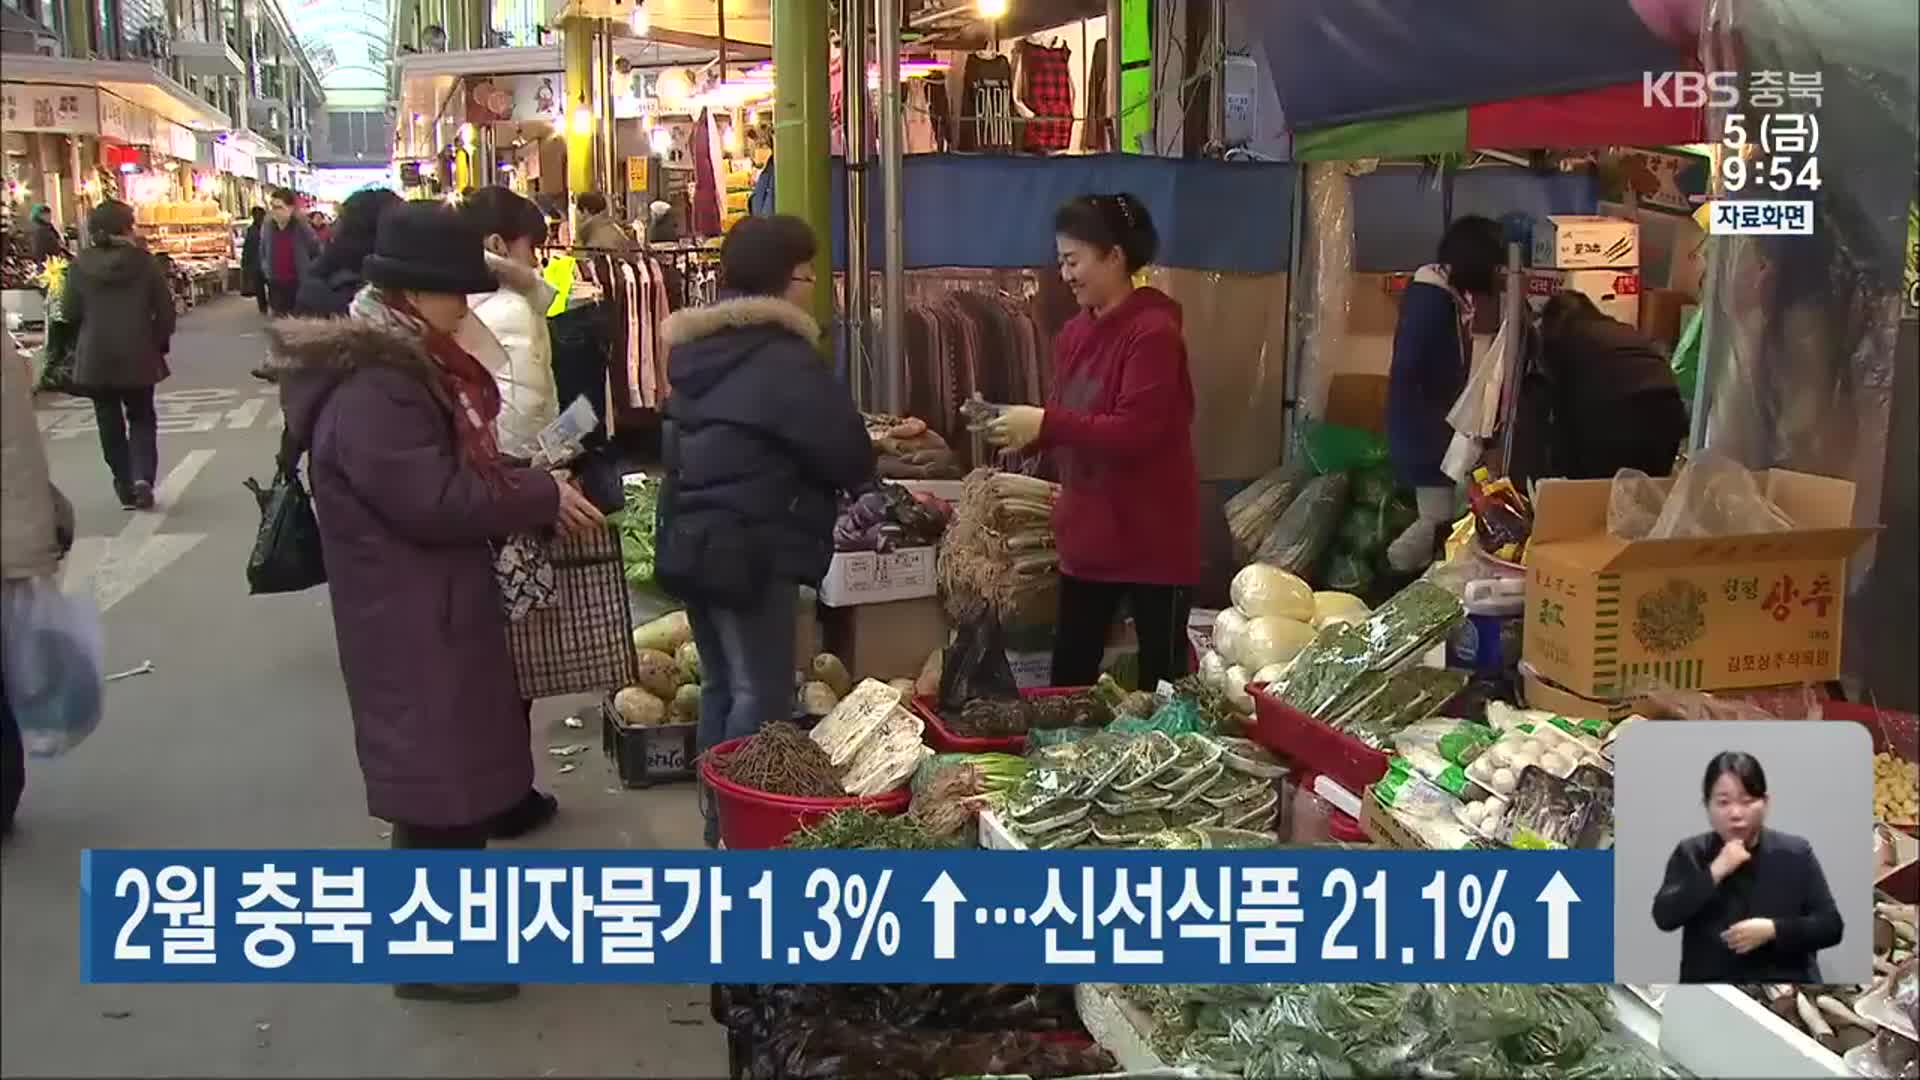 2월 충북 소비자물가 1.3%↑…신선식품 21.1%↑